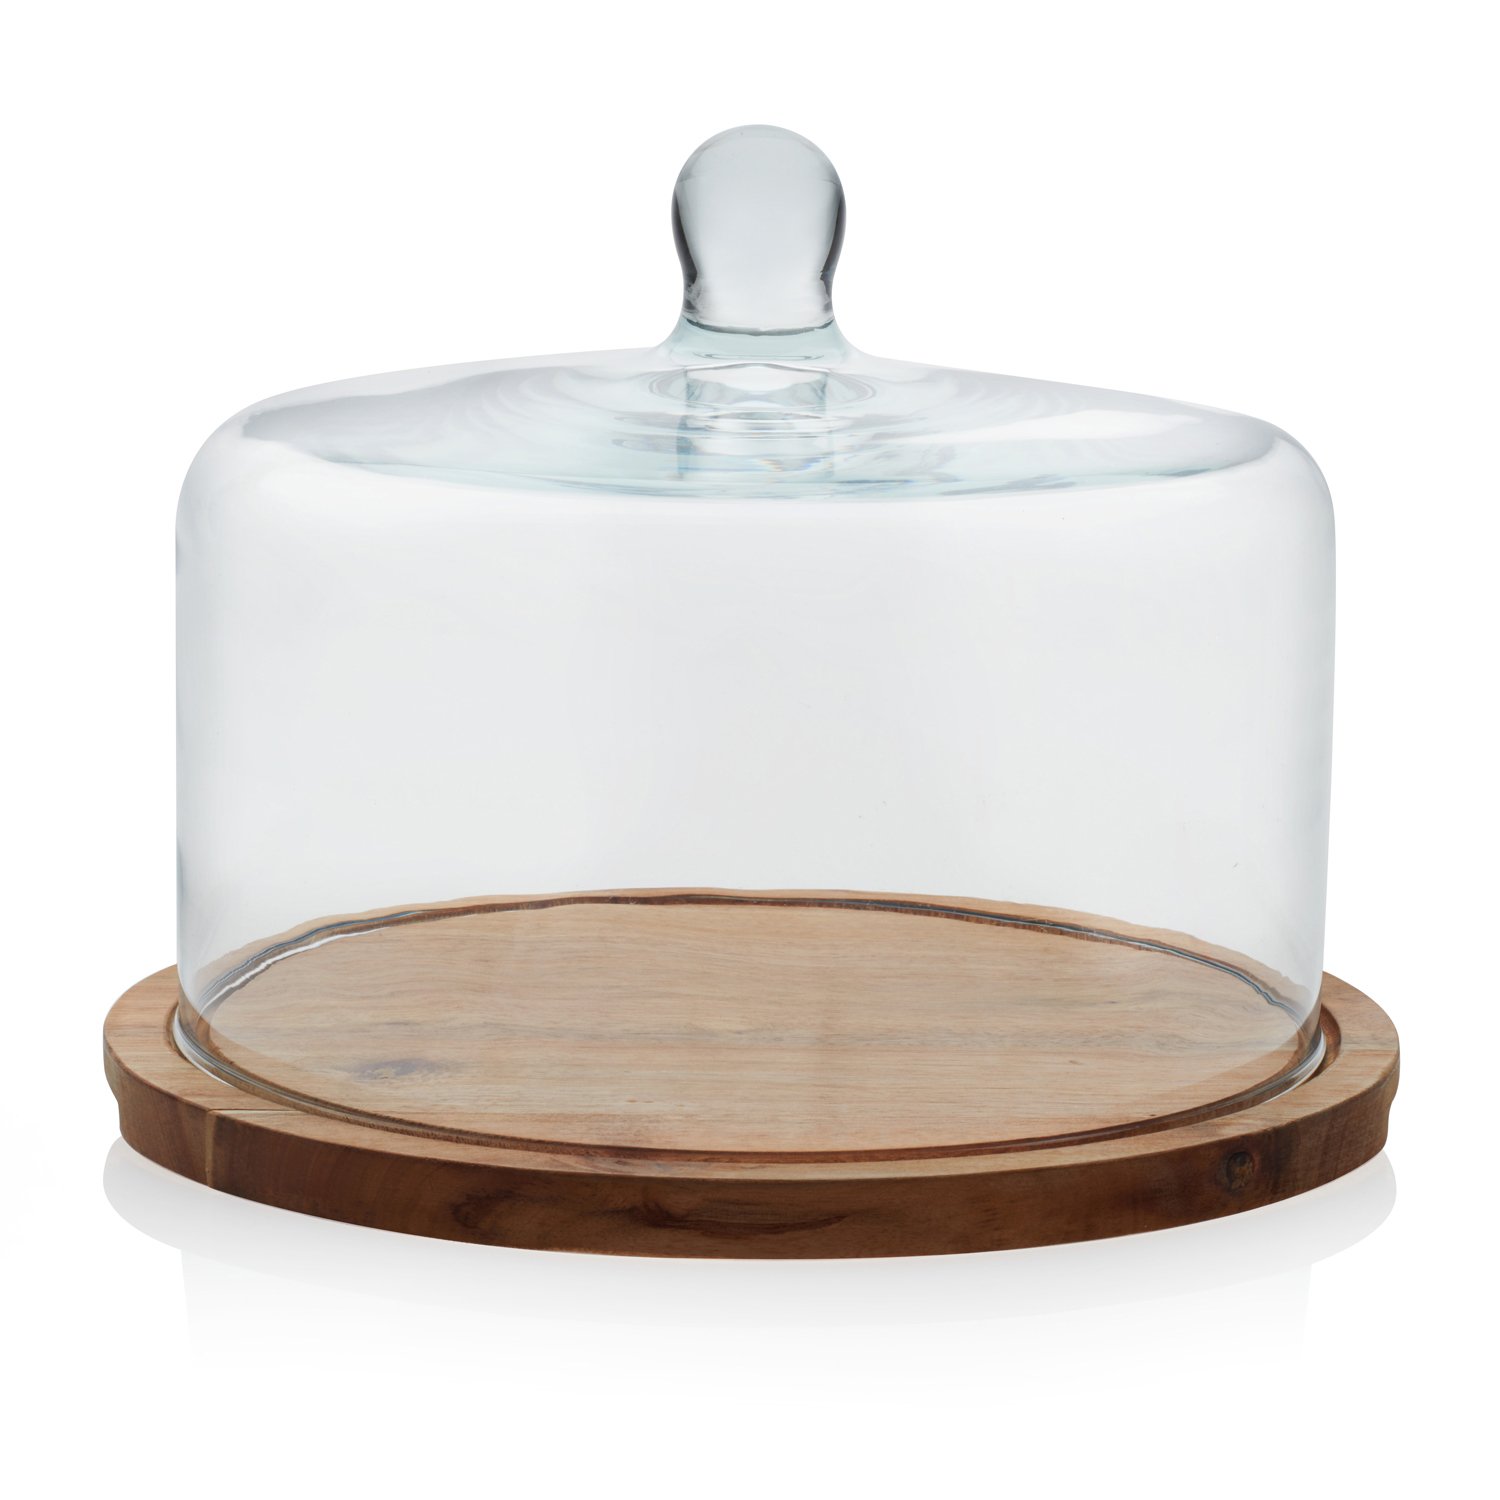 LibbeyÂ® Flat Round Wood Server with Glass Dome